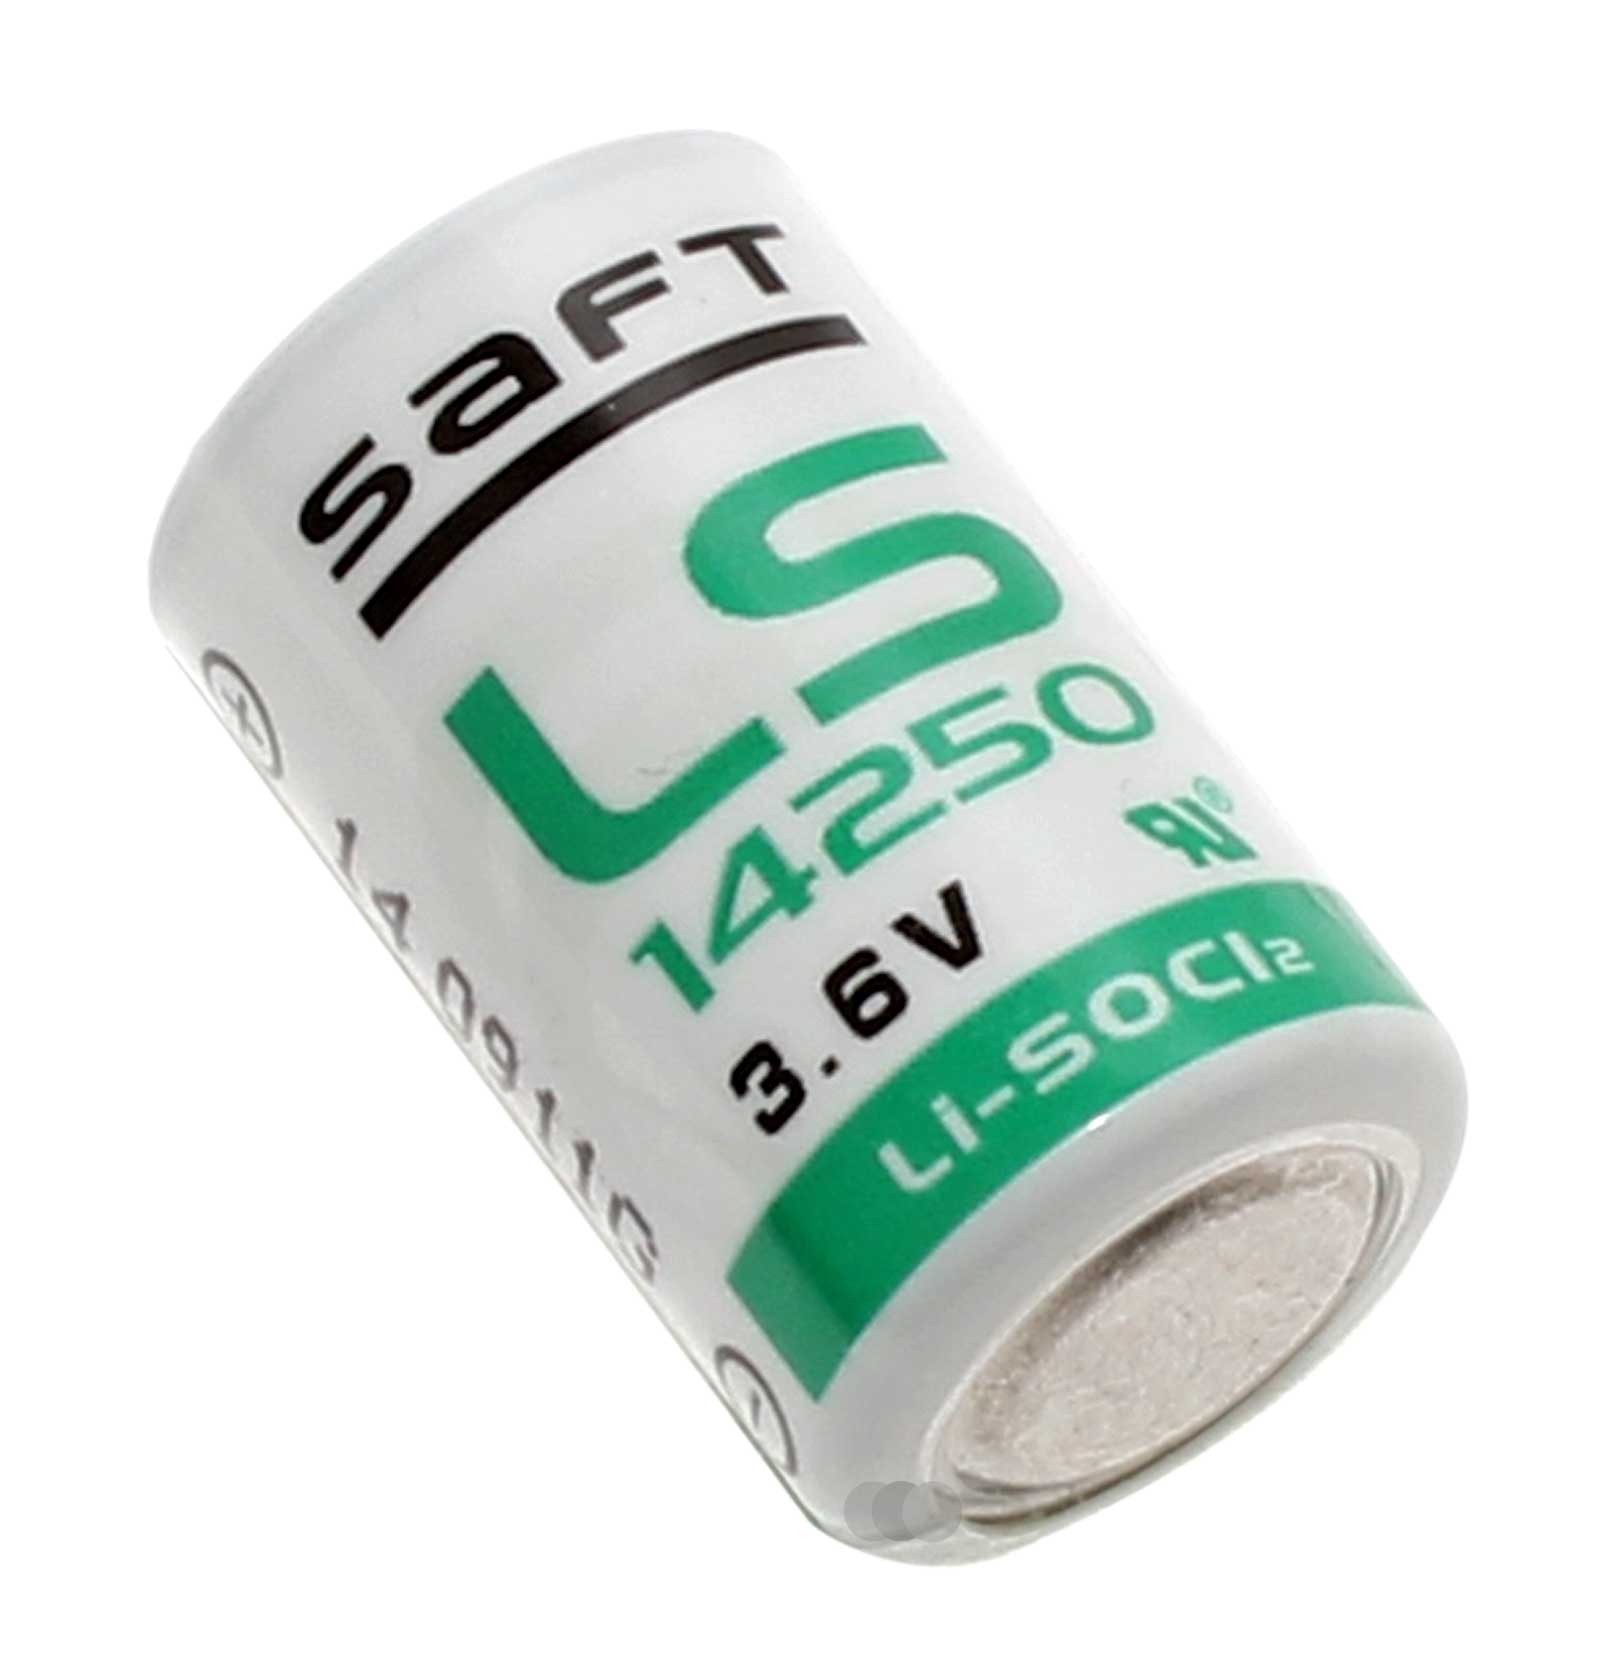 Saft LS14250 1/2 AA Li-SOCl2 Lithium Spezialbatterie, Industriezelle mit extrem hoher Energiedichte von 3,6 Volt und 1200mAh Kapazität.